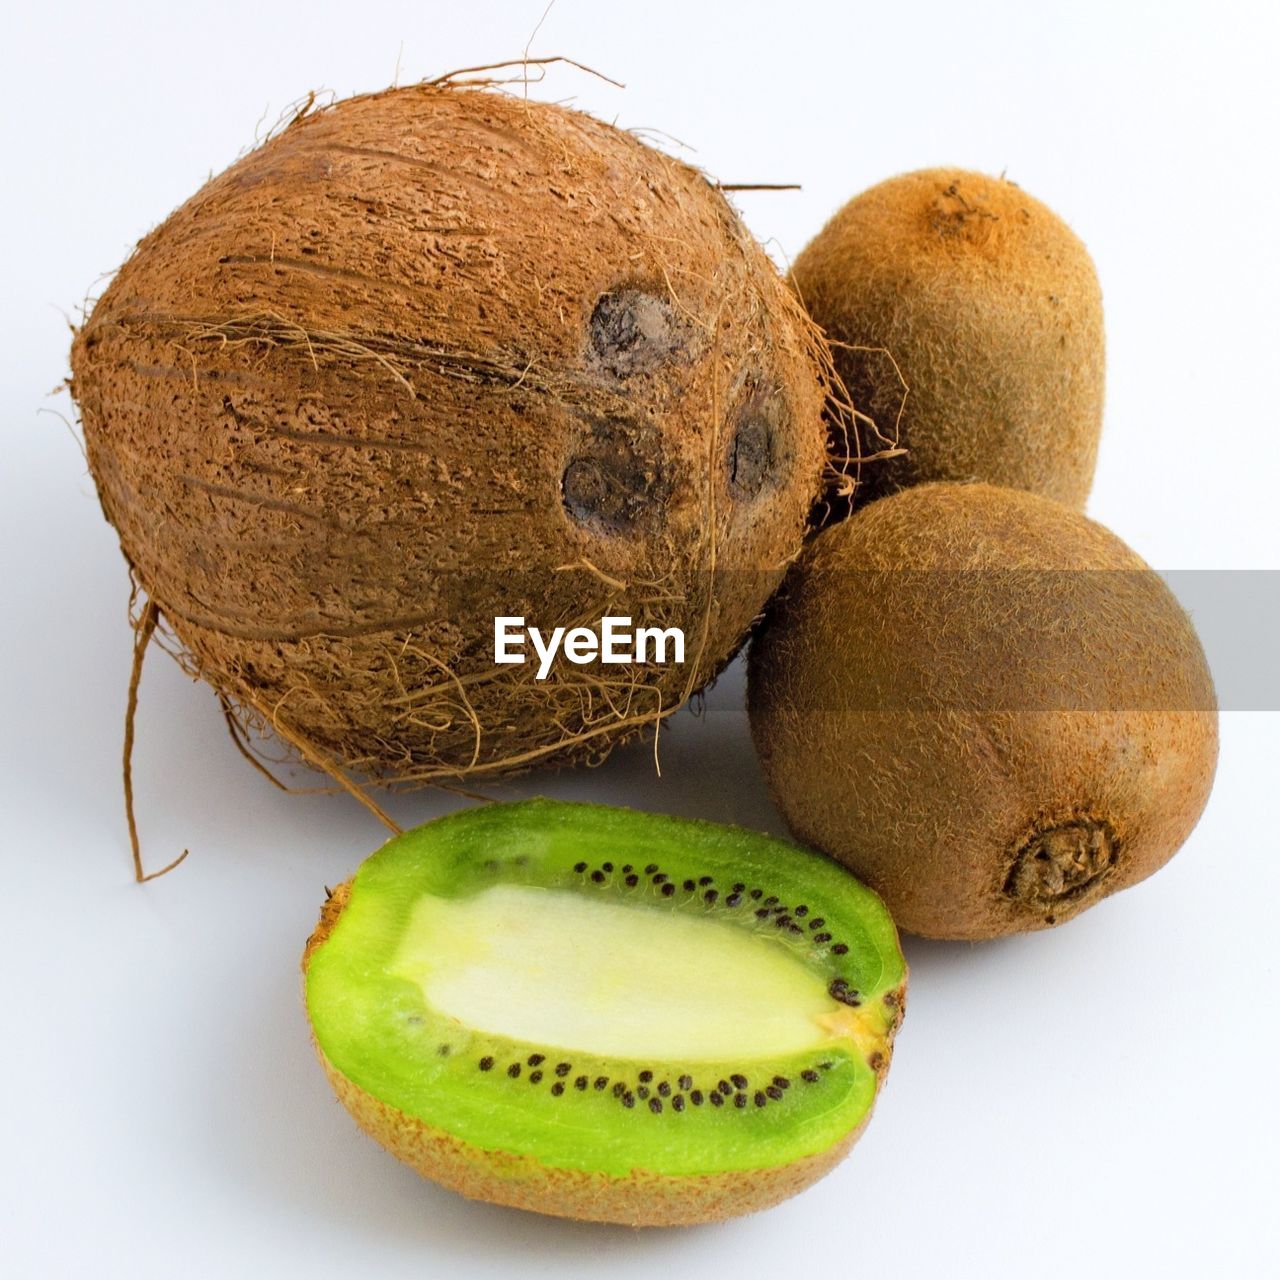 Coconut and kiwi